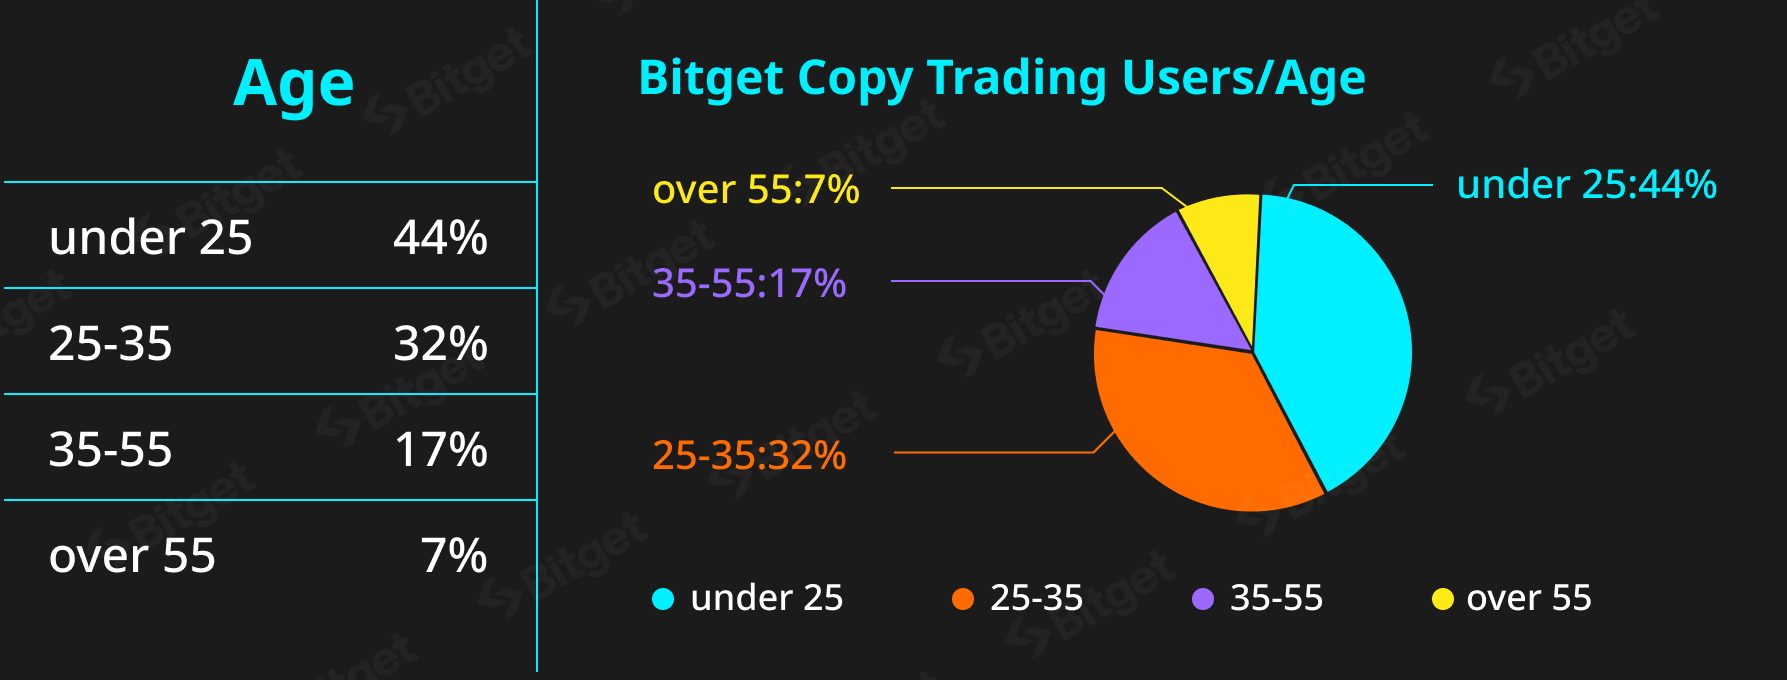 copy traders age diagram